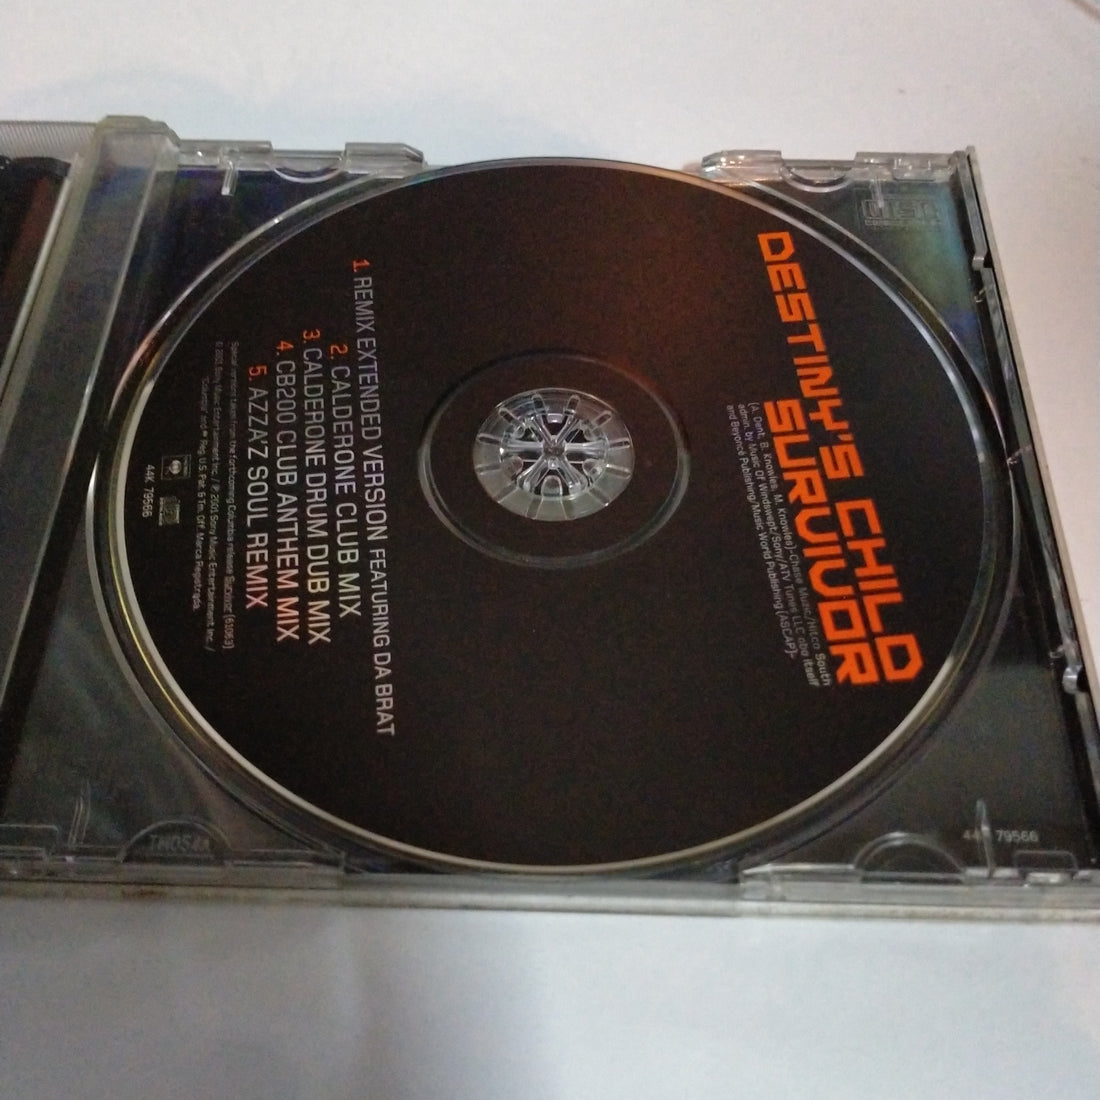 Destiny's Child - Survivor (Dance Mixes) (CD) (G)